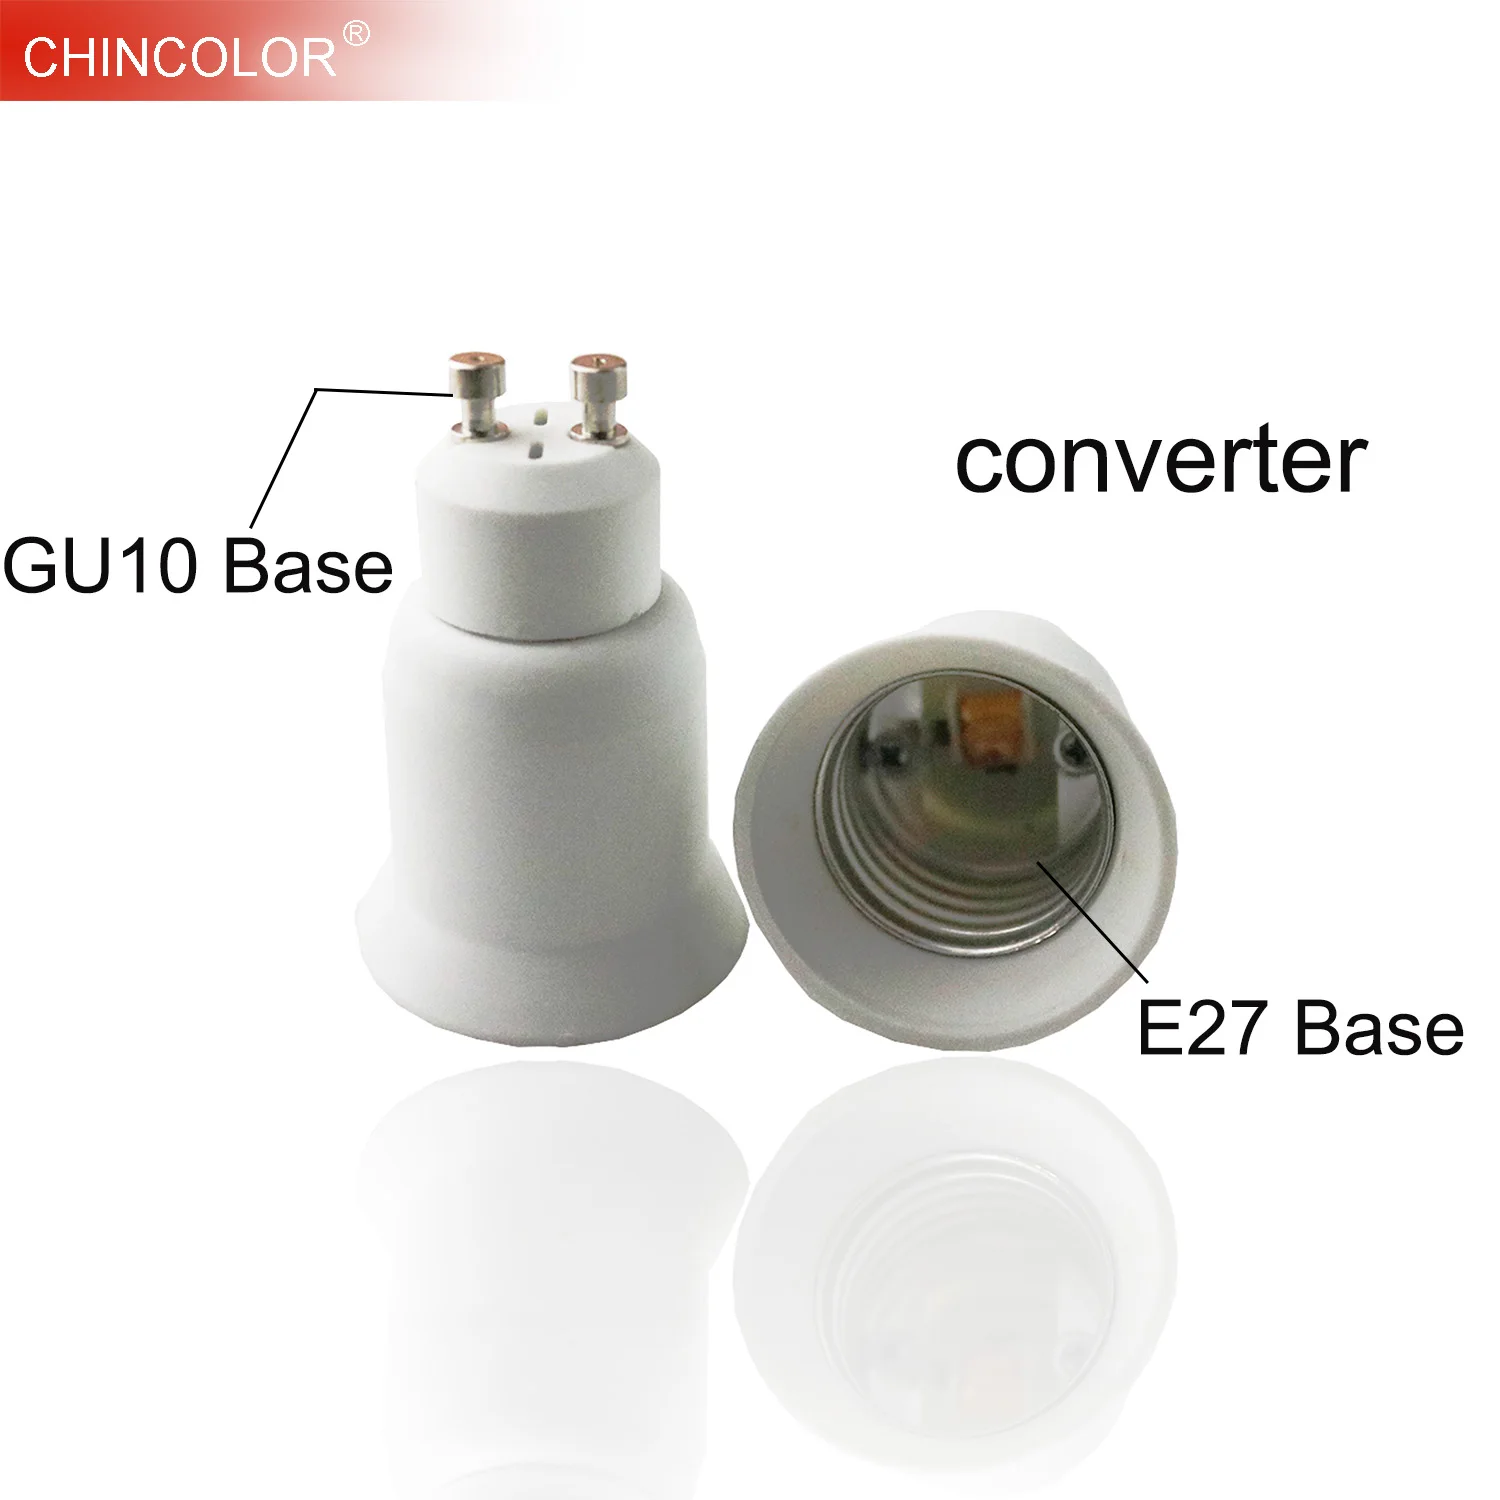 CE CERTIFIED GU10 To GU10 Extender Adaptor Lamp Holder LED Converter UK SELLER. 